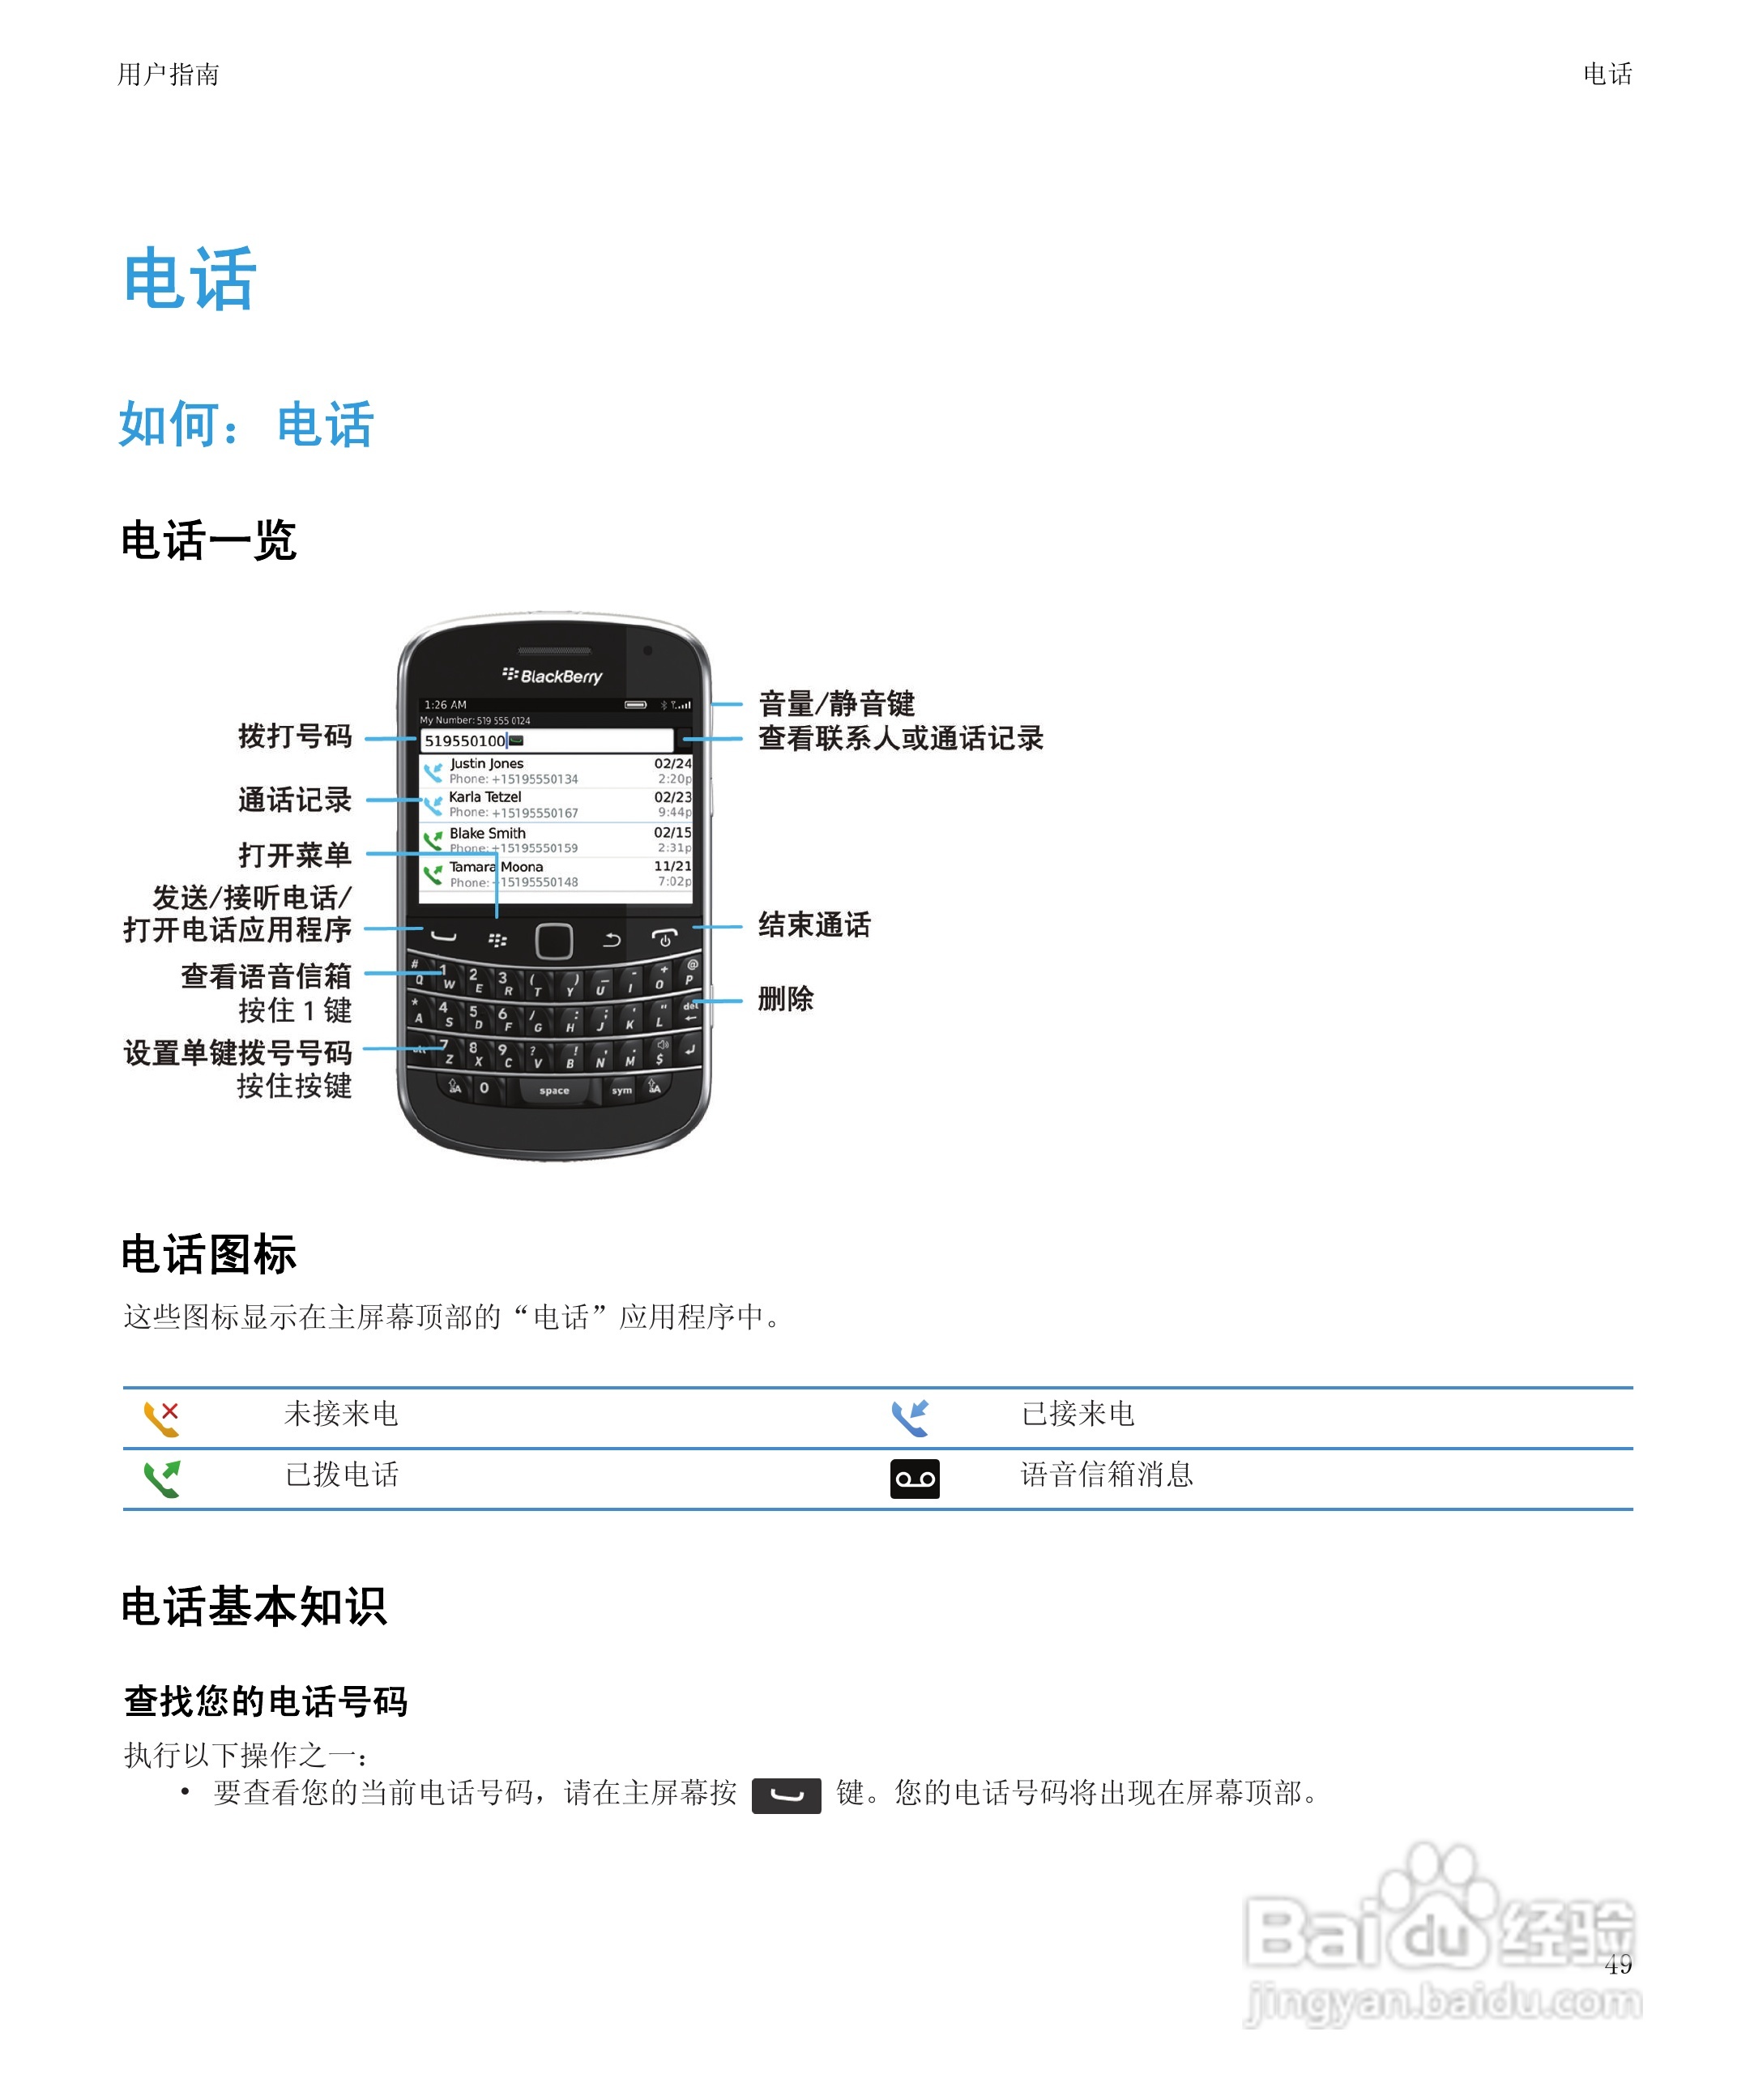 黑莓9930手机使用说明书:[6]